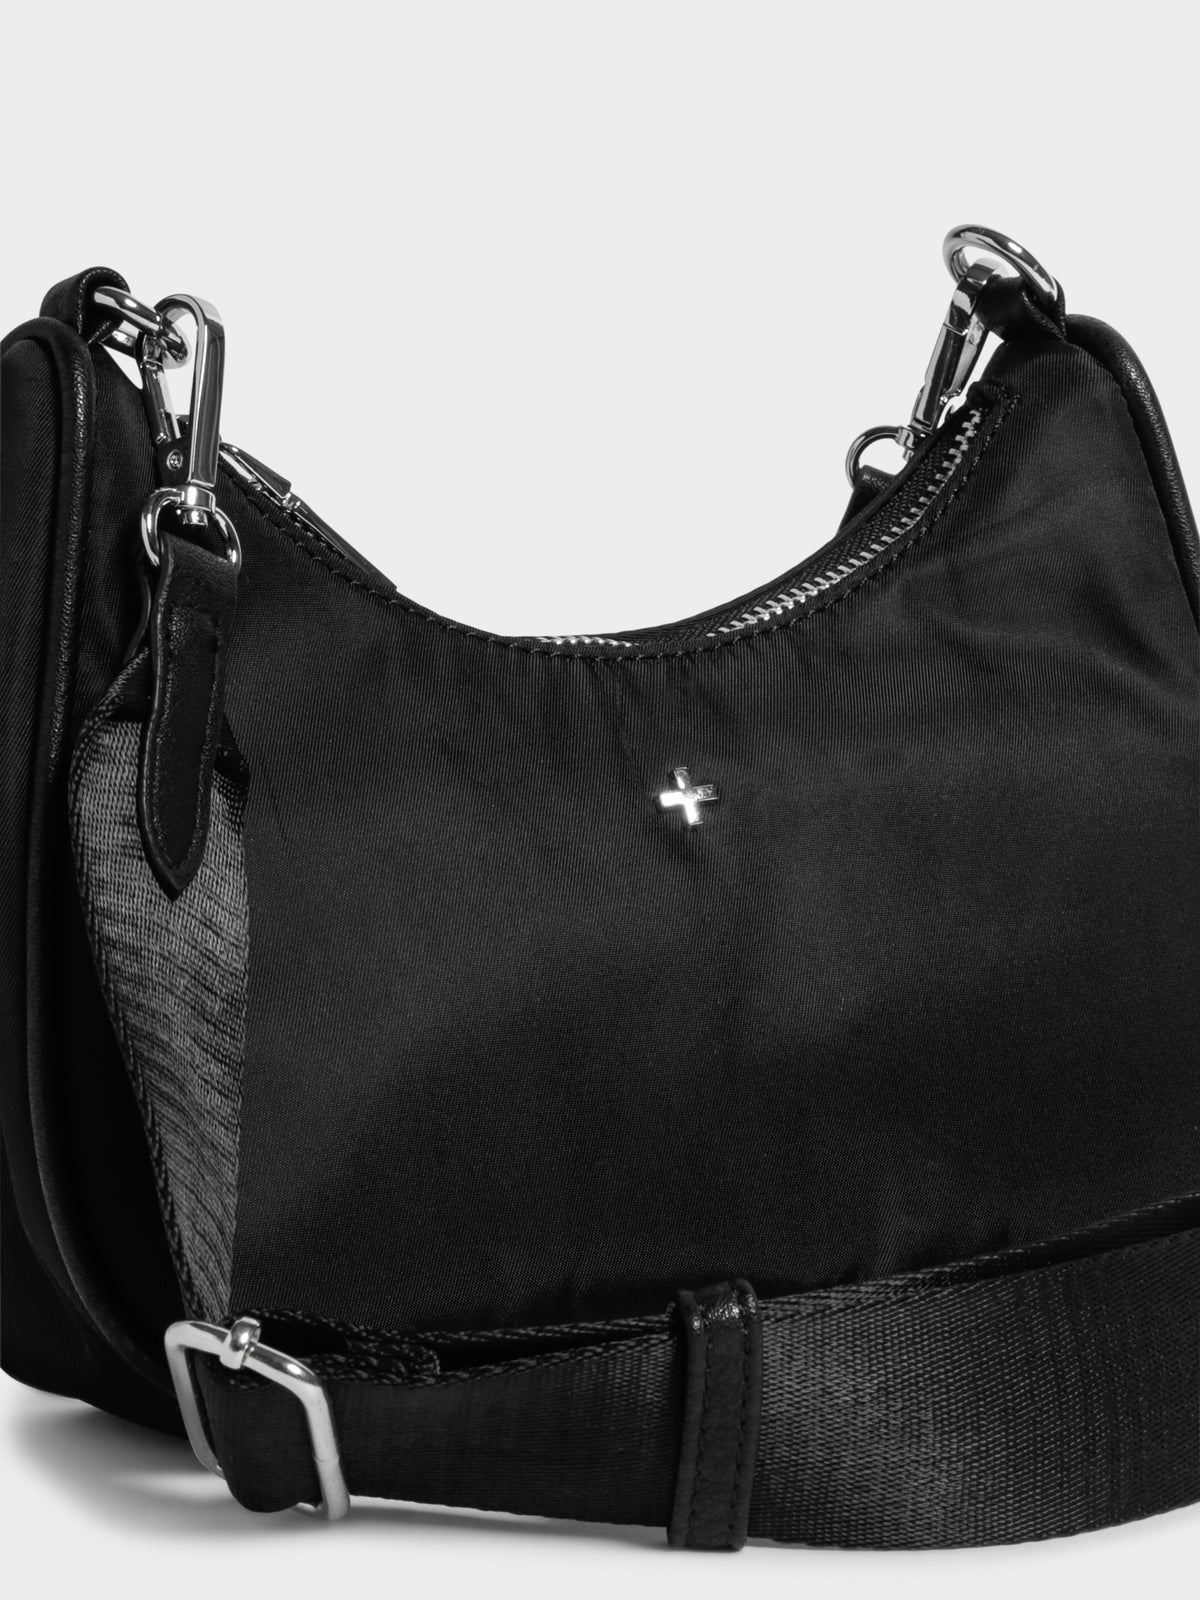 Paloma Cross Body Bag in Black